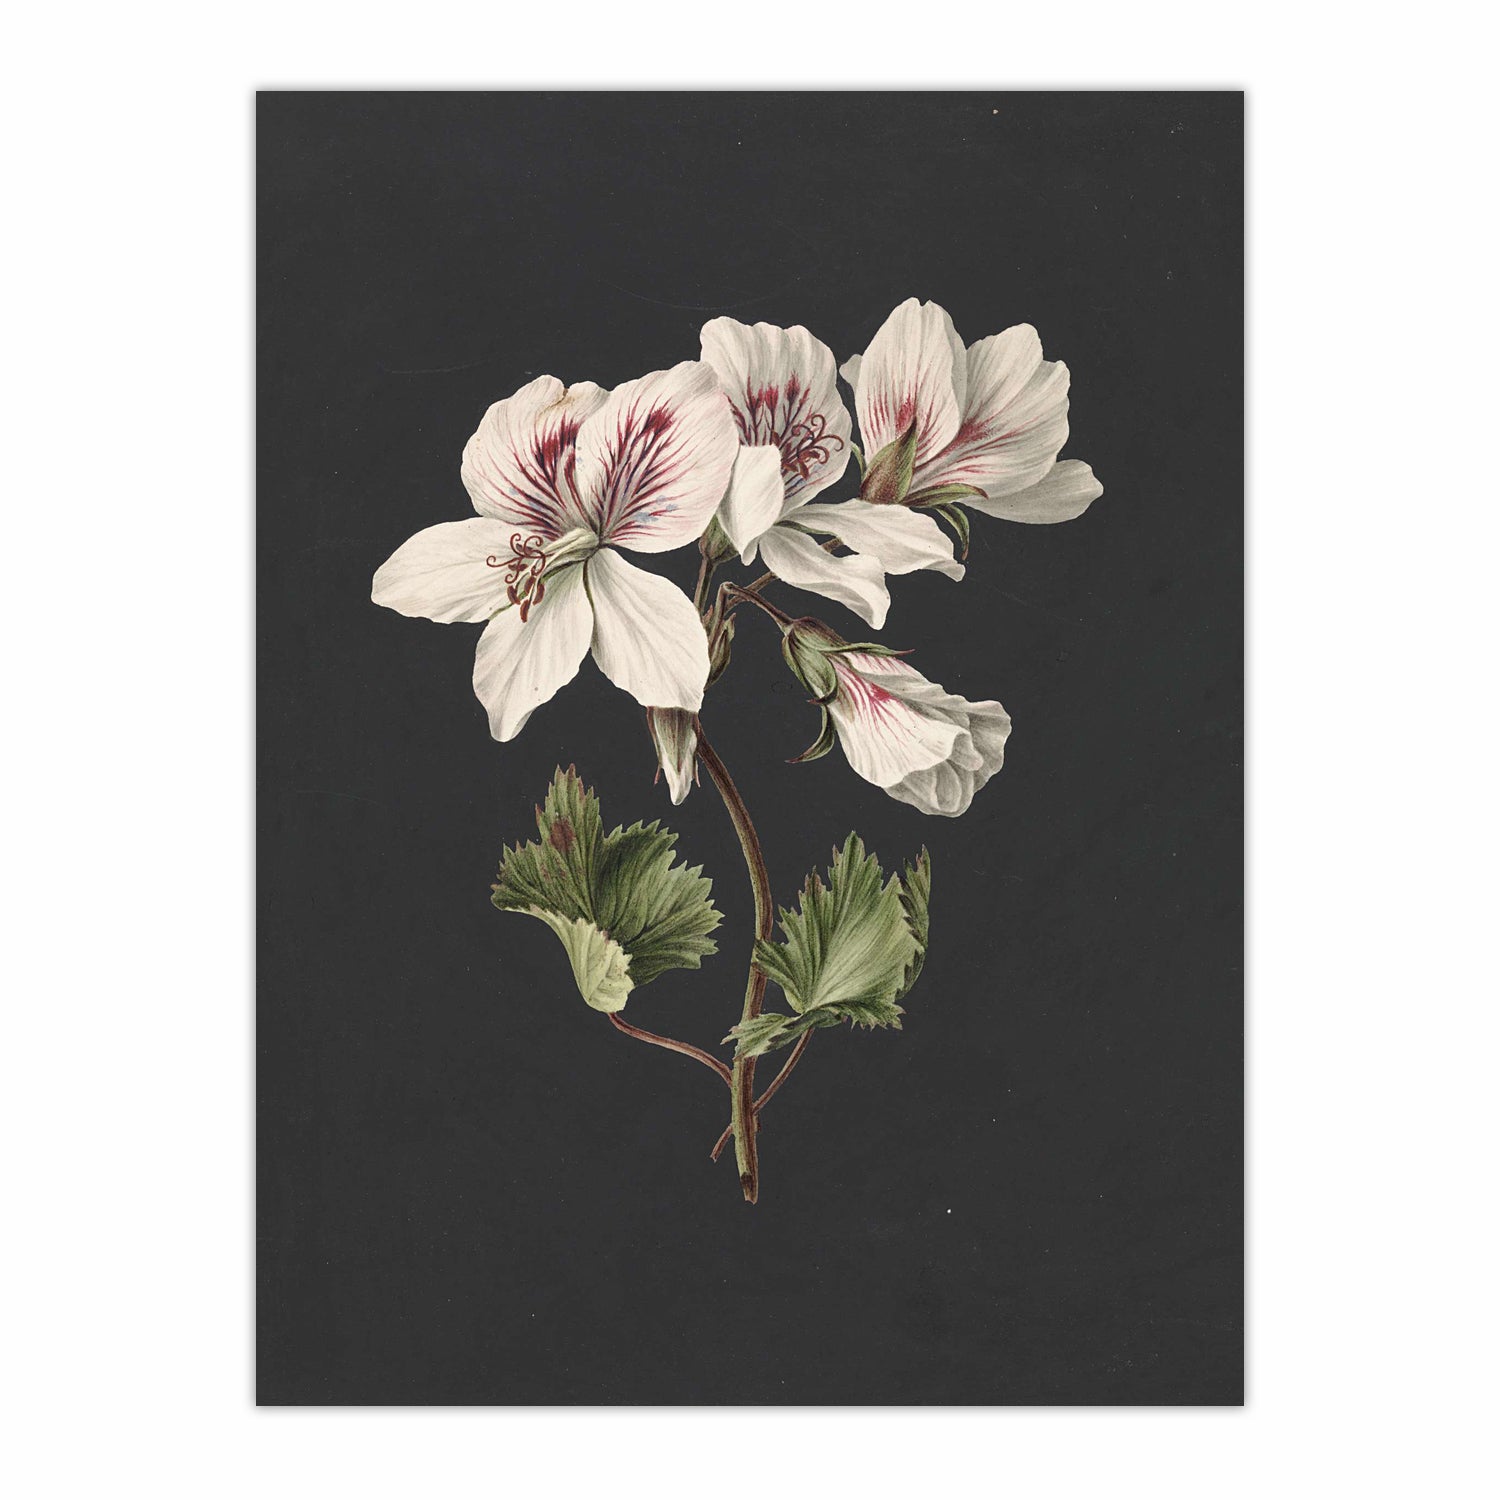 Pelargonium album bicolor